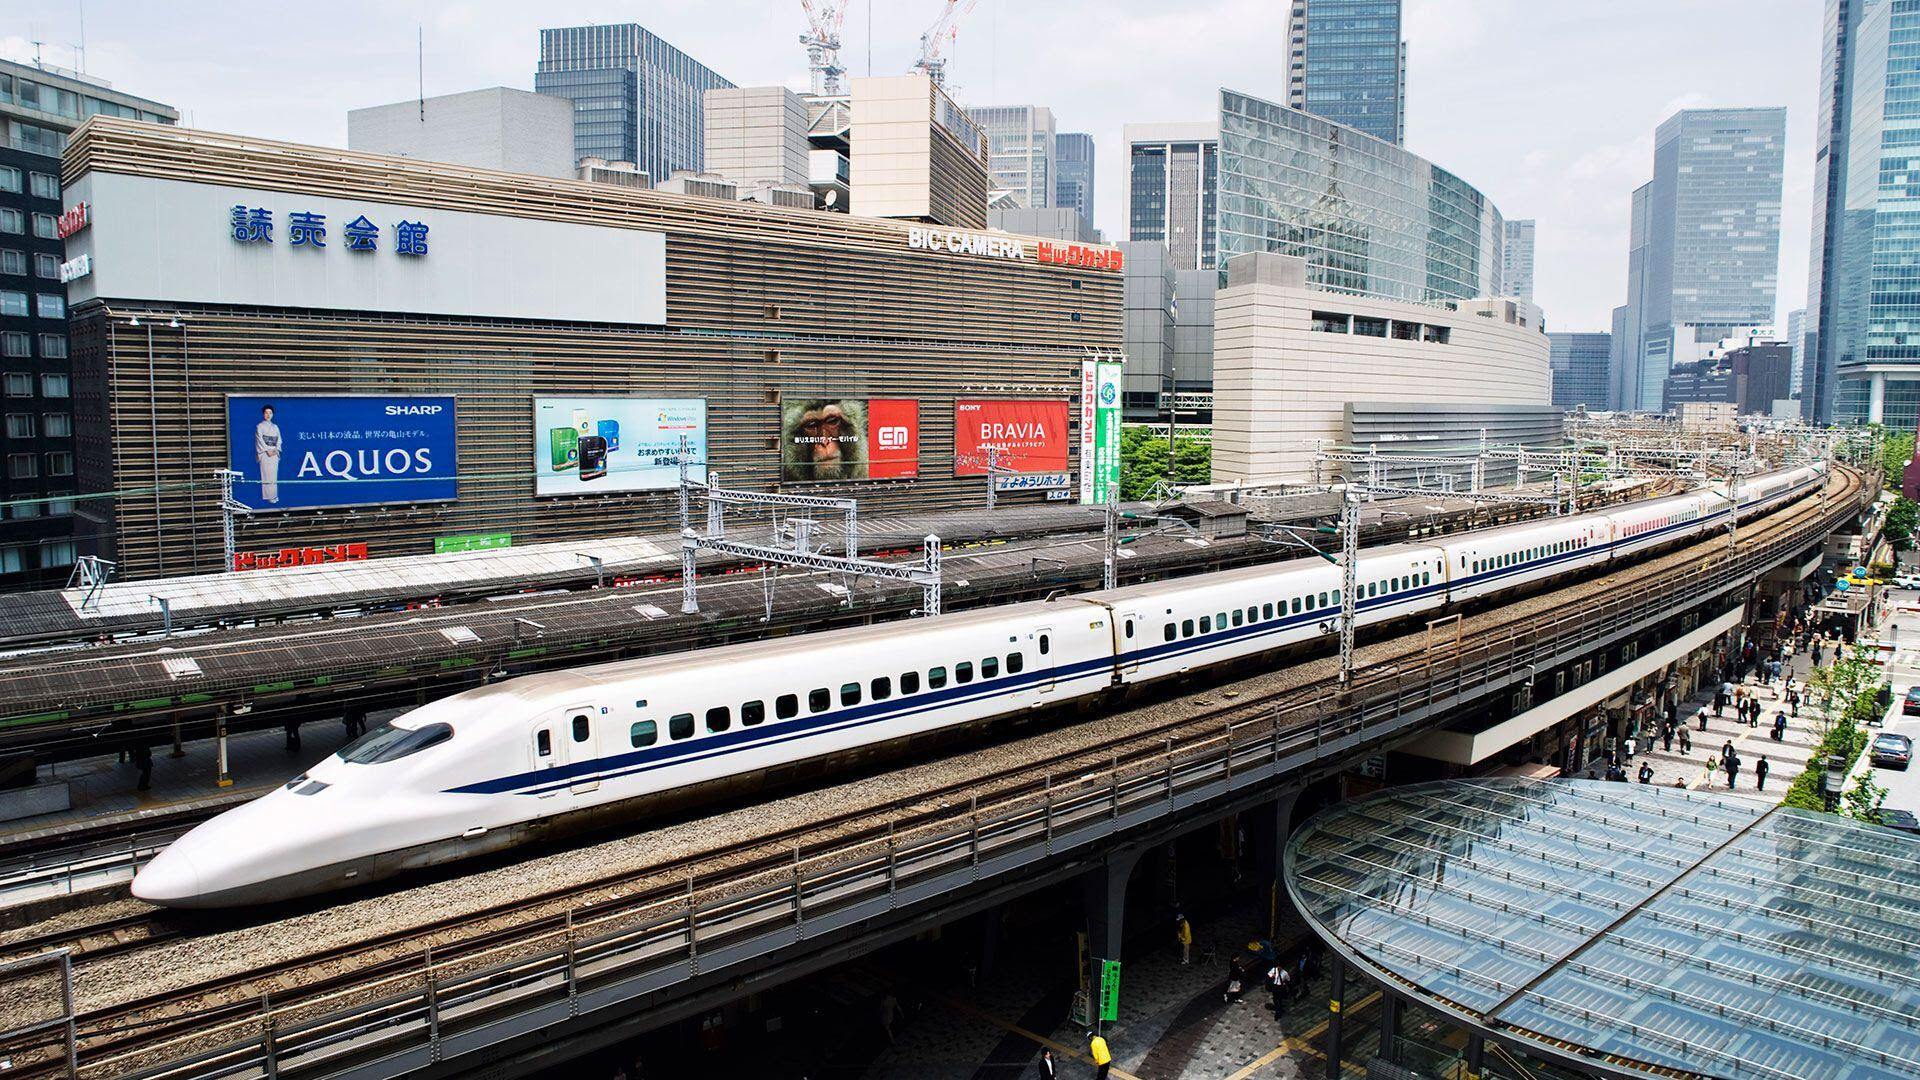 El shinkansen o tren bala en Japón conecta todo el país a alta velocidad (Getty)